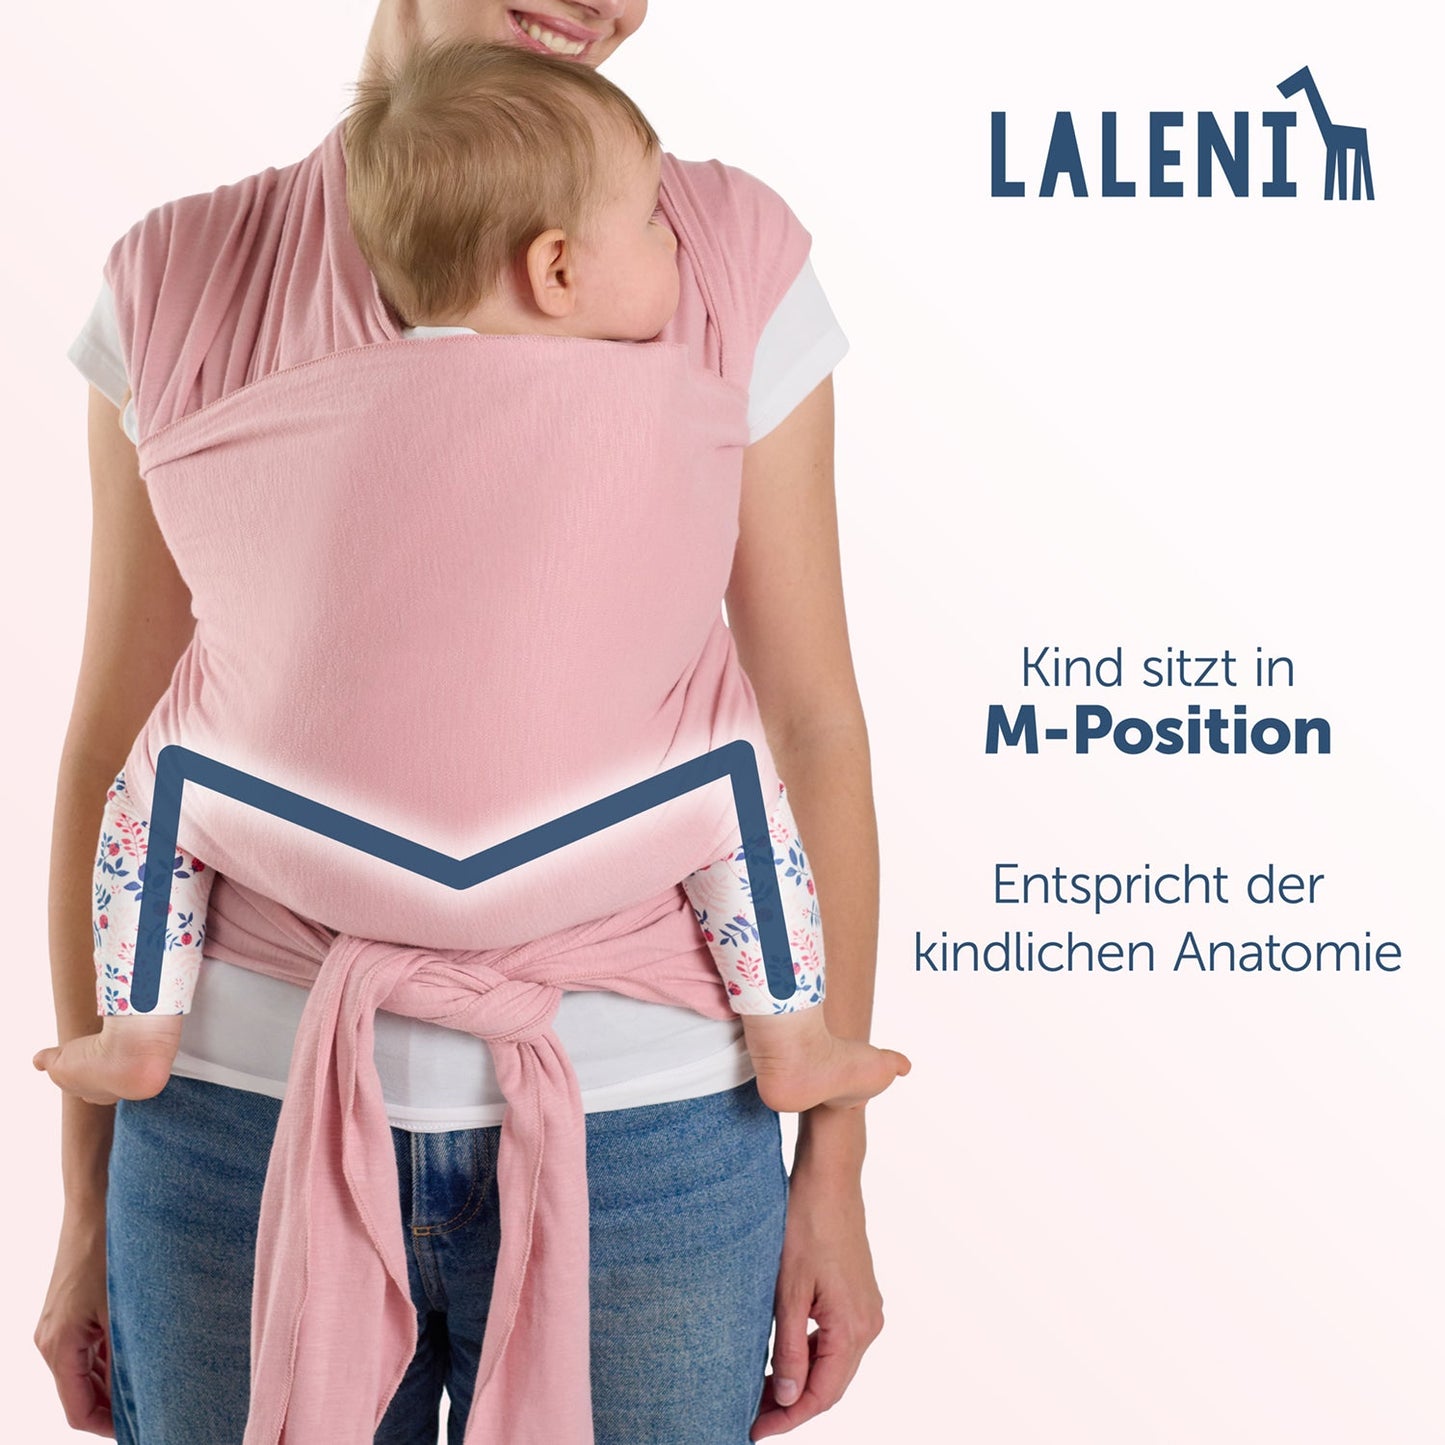 Rückenansicht einer Frau mit Baby in rosa Tragehilfe die M-Position und anatomische Korrektheit des Sitzes werden hervorgehoben.